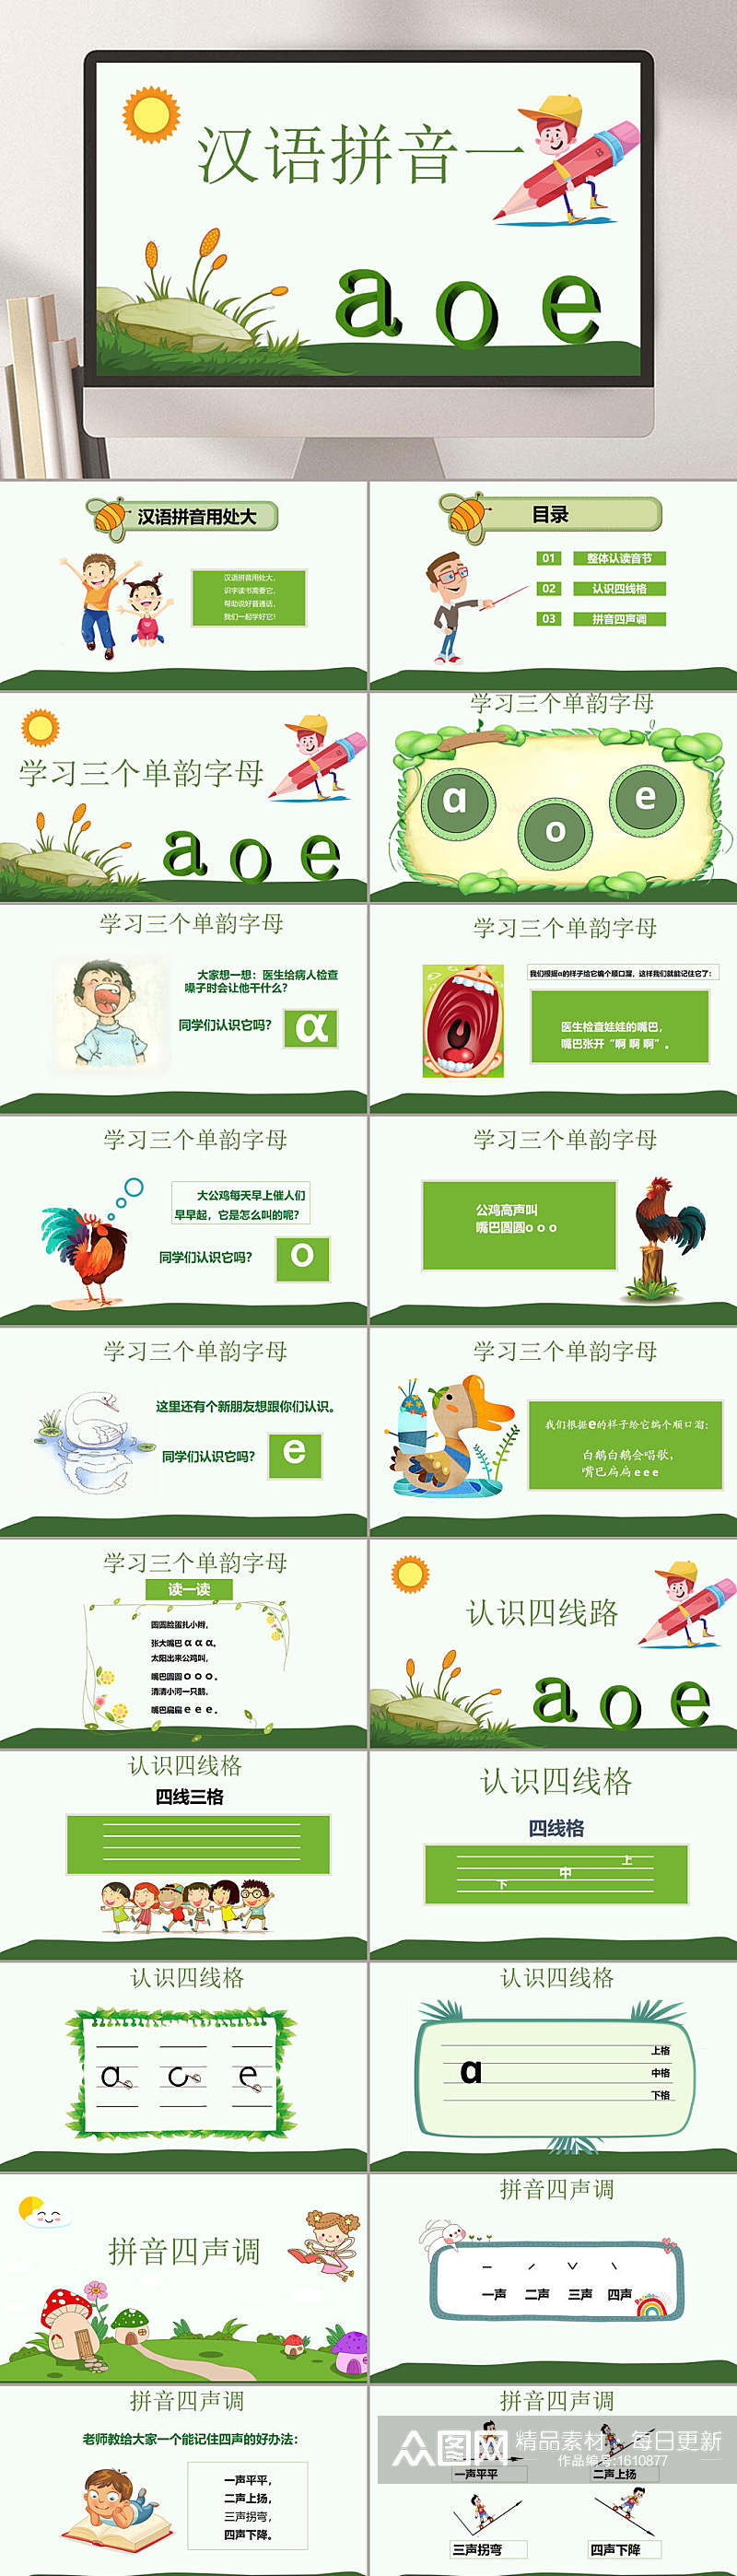 汉语拼音教学aoePPT模板素材